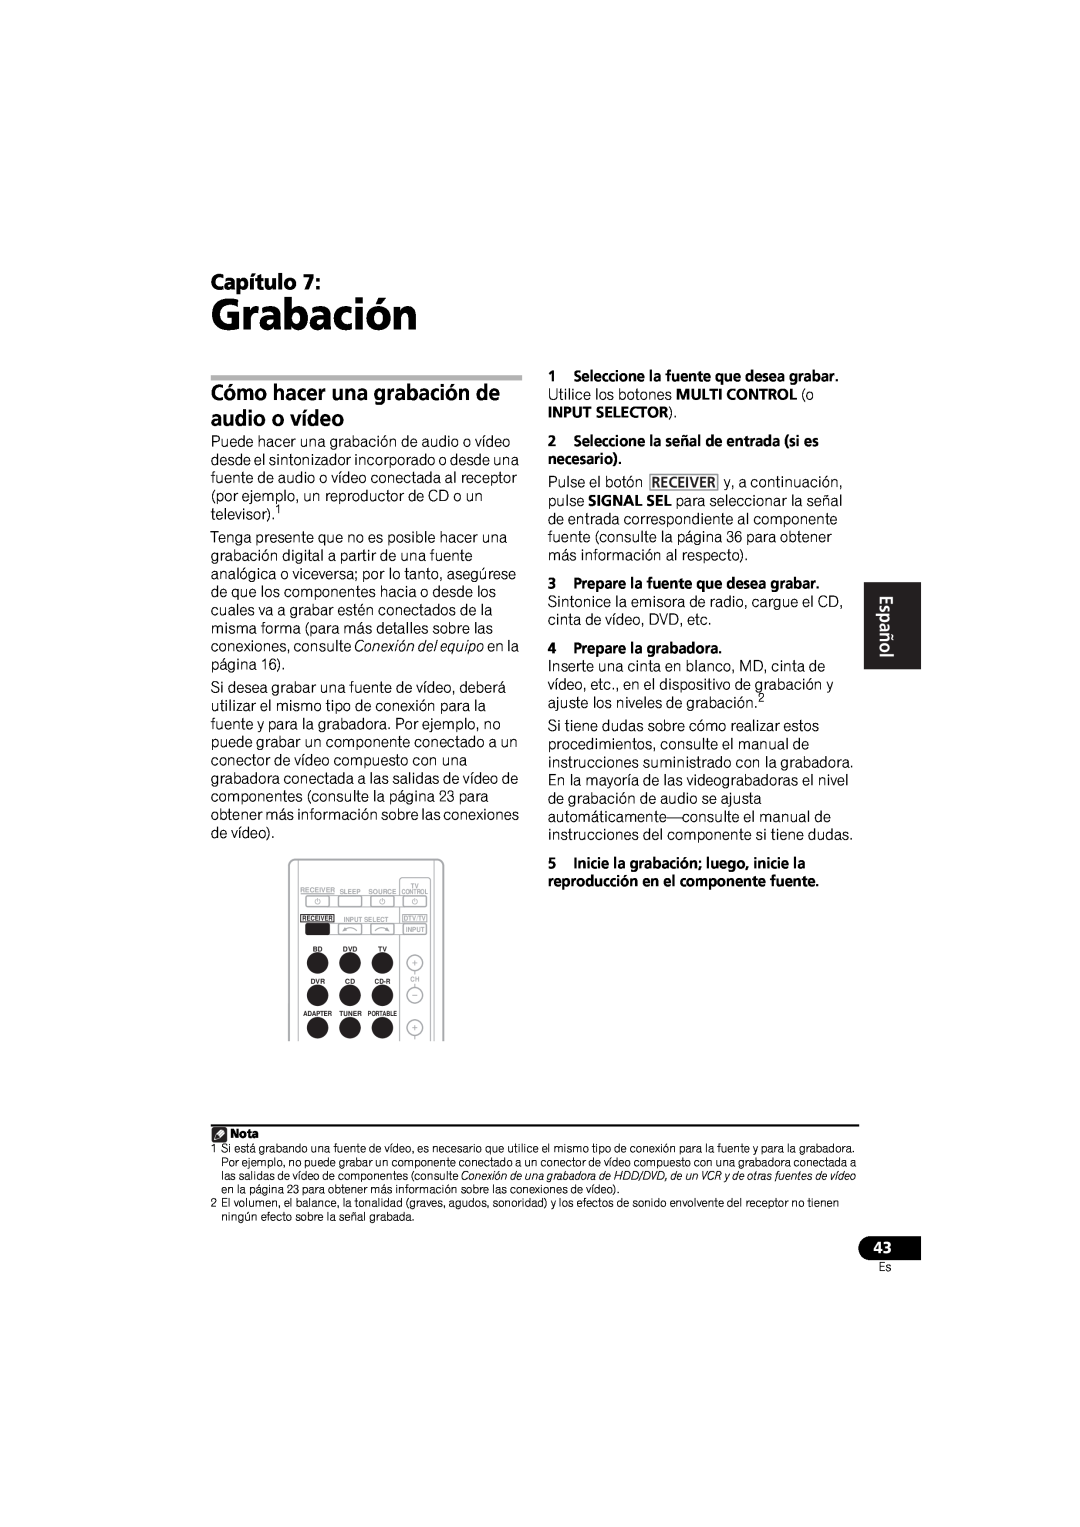 Pioneer VSX-520 manual Grabación, Capítulo, Cómo hacer una grabación de audio o vídeo, Español 